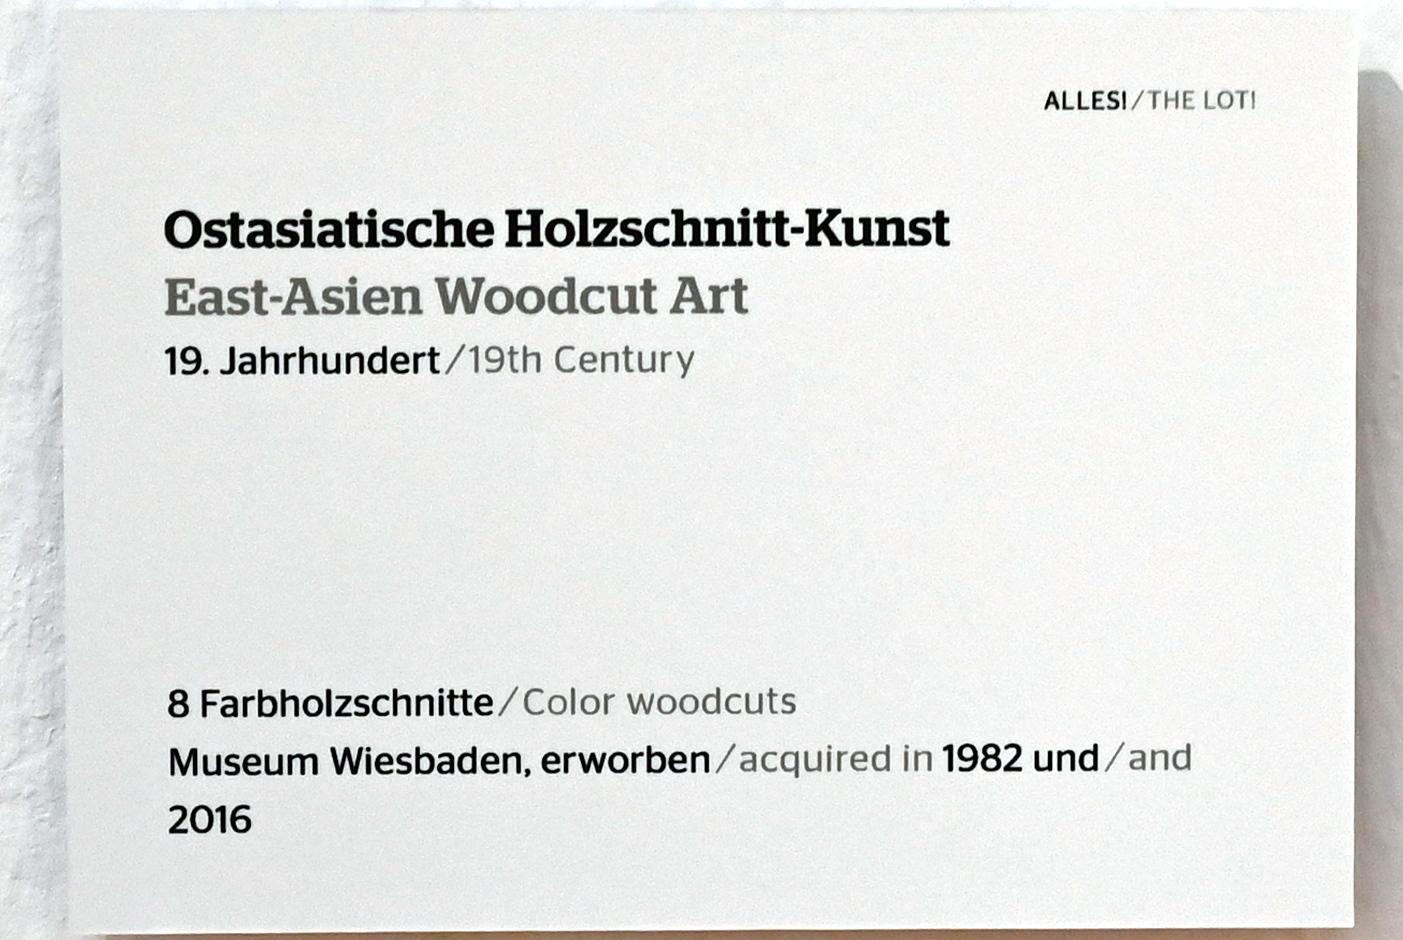 Ostasiatische Holzschnitt-Kunst, Wiesbaden, Museum Wiesbaden, Ausstellung "Alles! 100 Jahre Jawlensky in Wiesbaden" vom 17.09.-26.06.2022, Saal 5, 19. Jhd., Bild 2/2